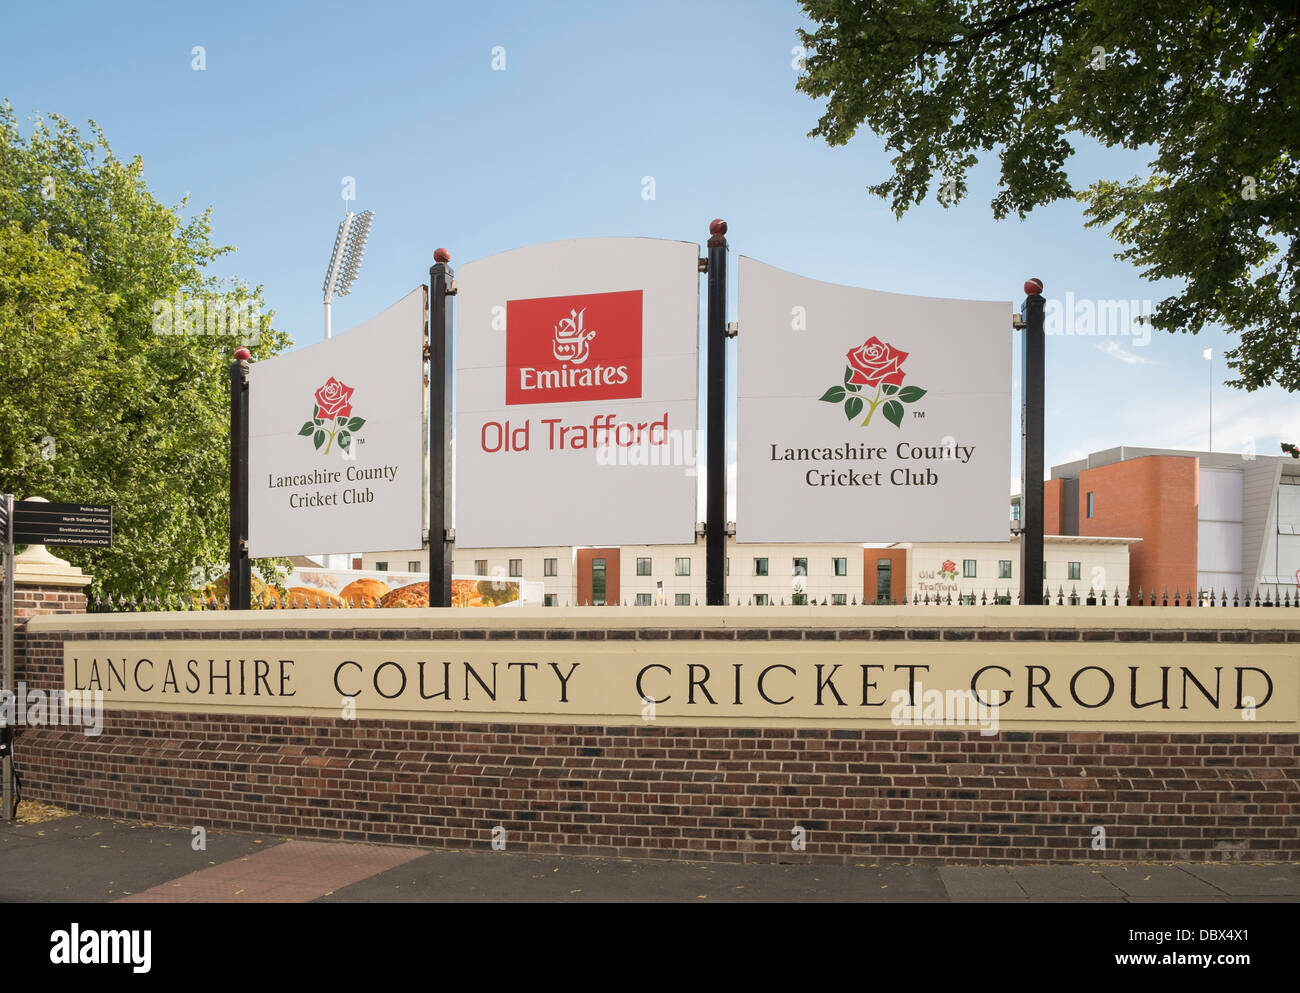 Melden Sie für Emirates Old Trafford in Lancashire County Cricket Ground in Manchester, Lancashire, England, Vereinigtes Königreich, Großbritannien Stockfoto